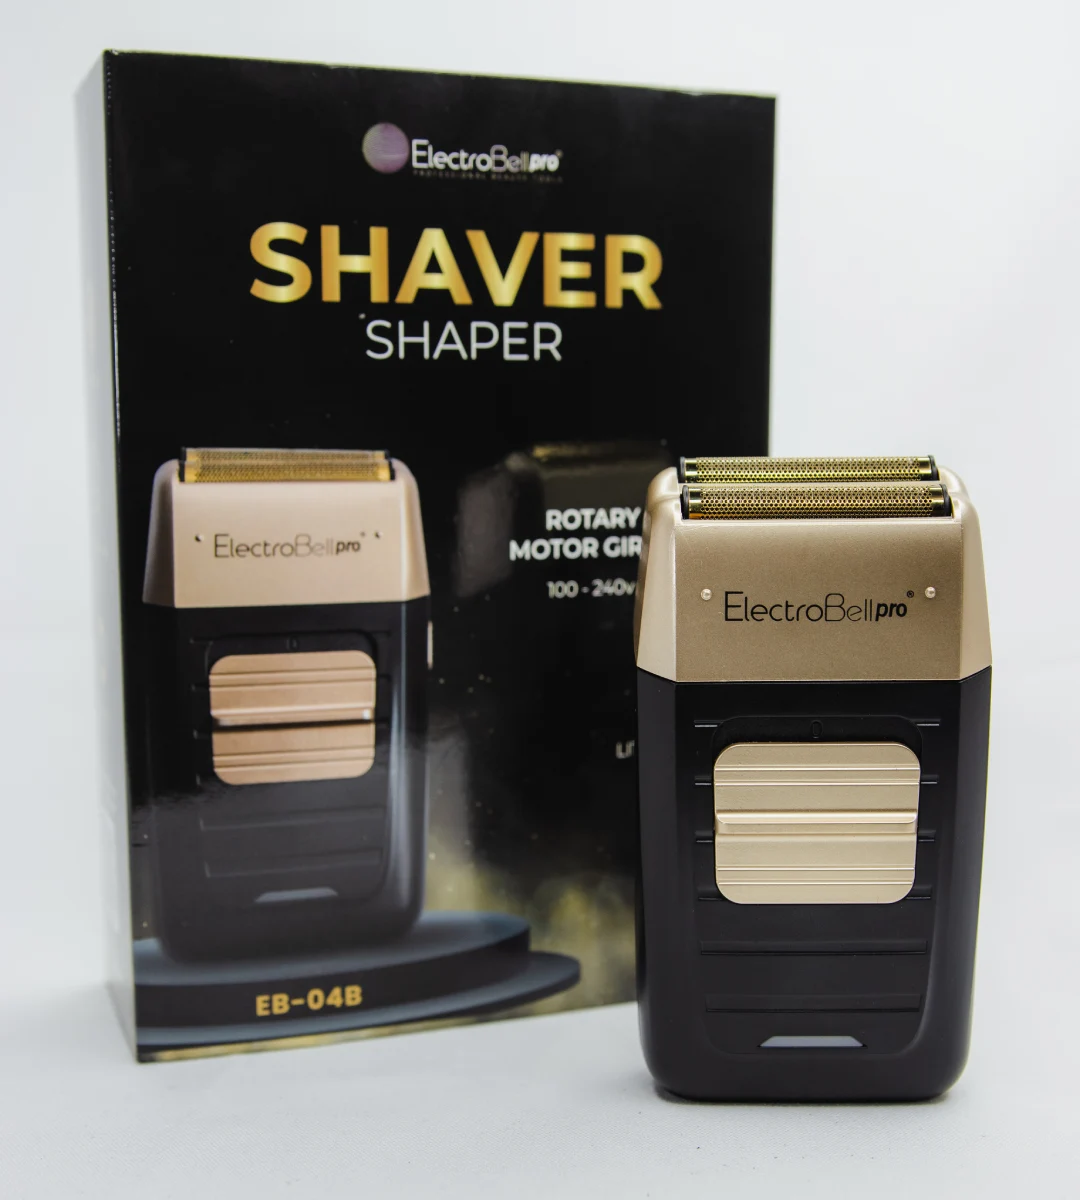 Shaver Shaper EB-04B